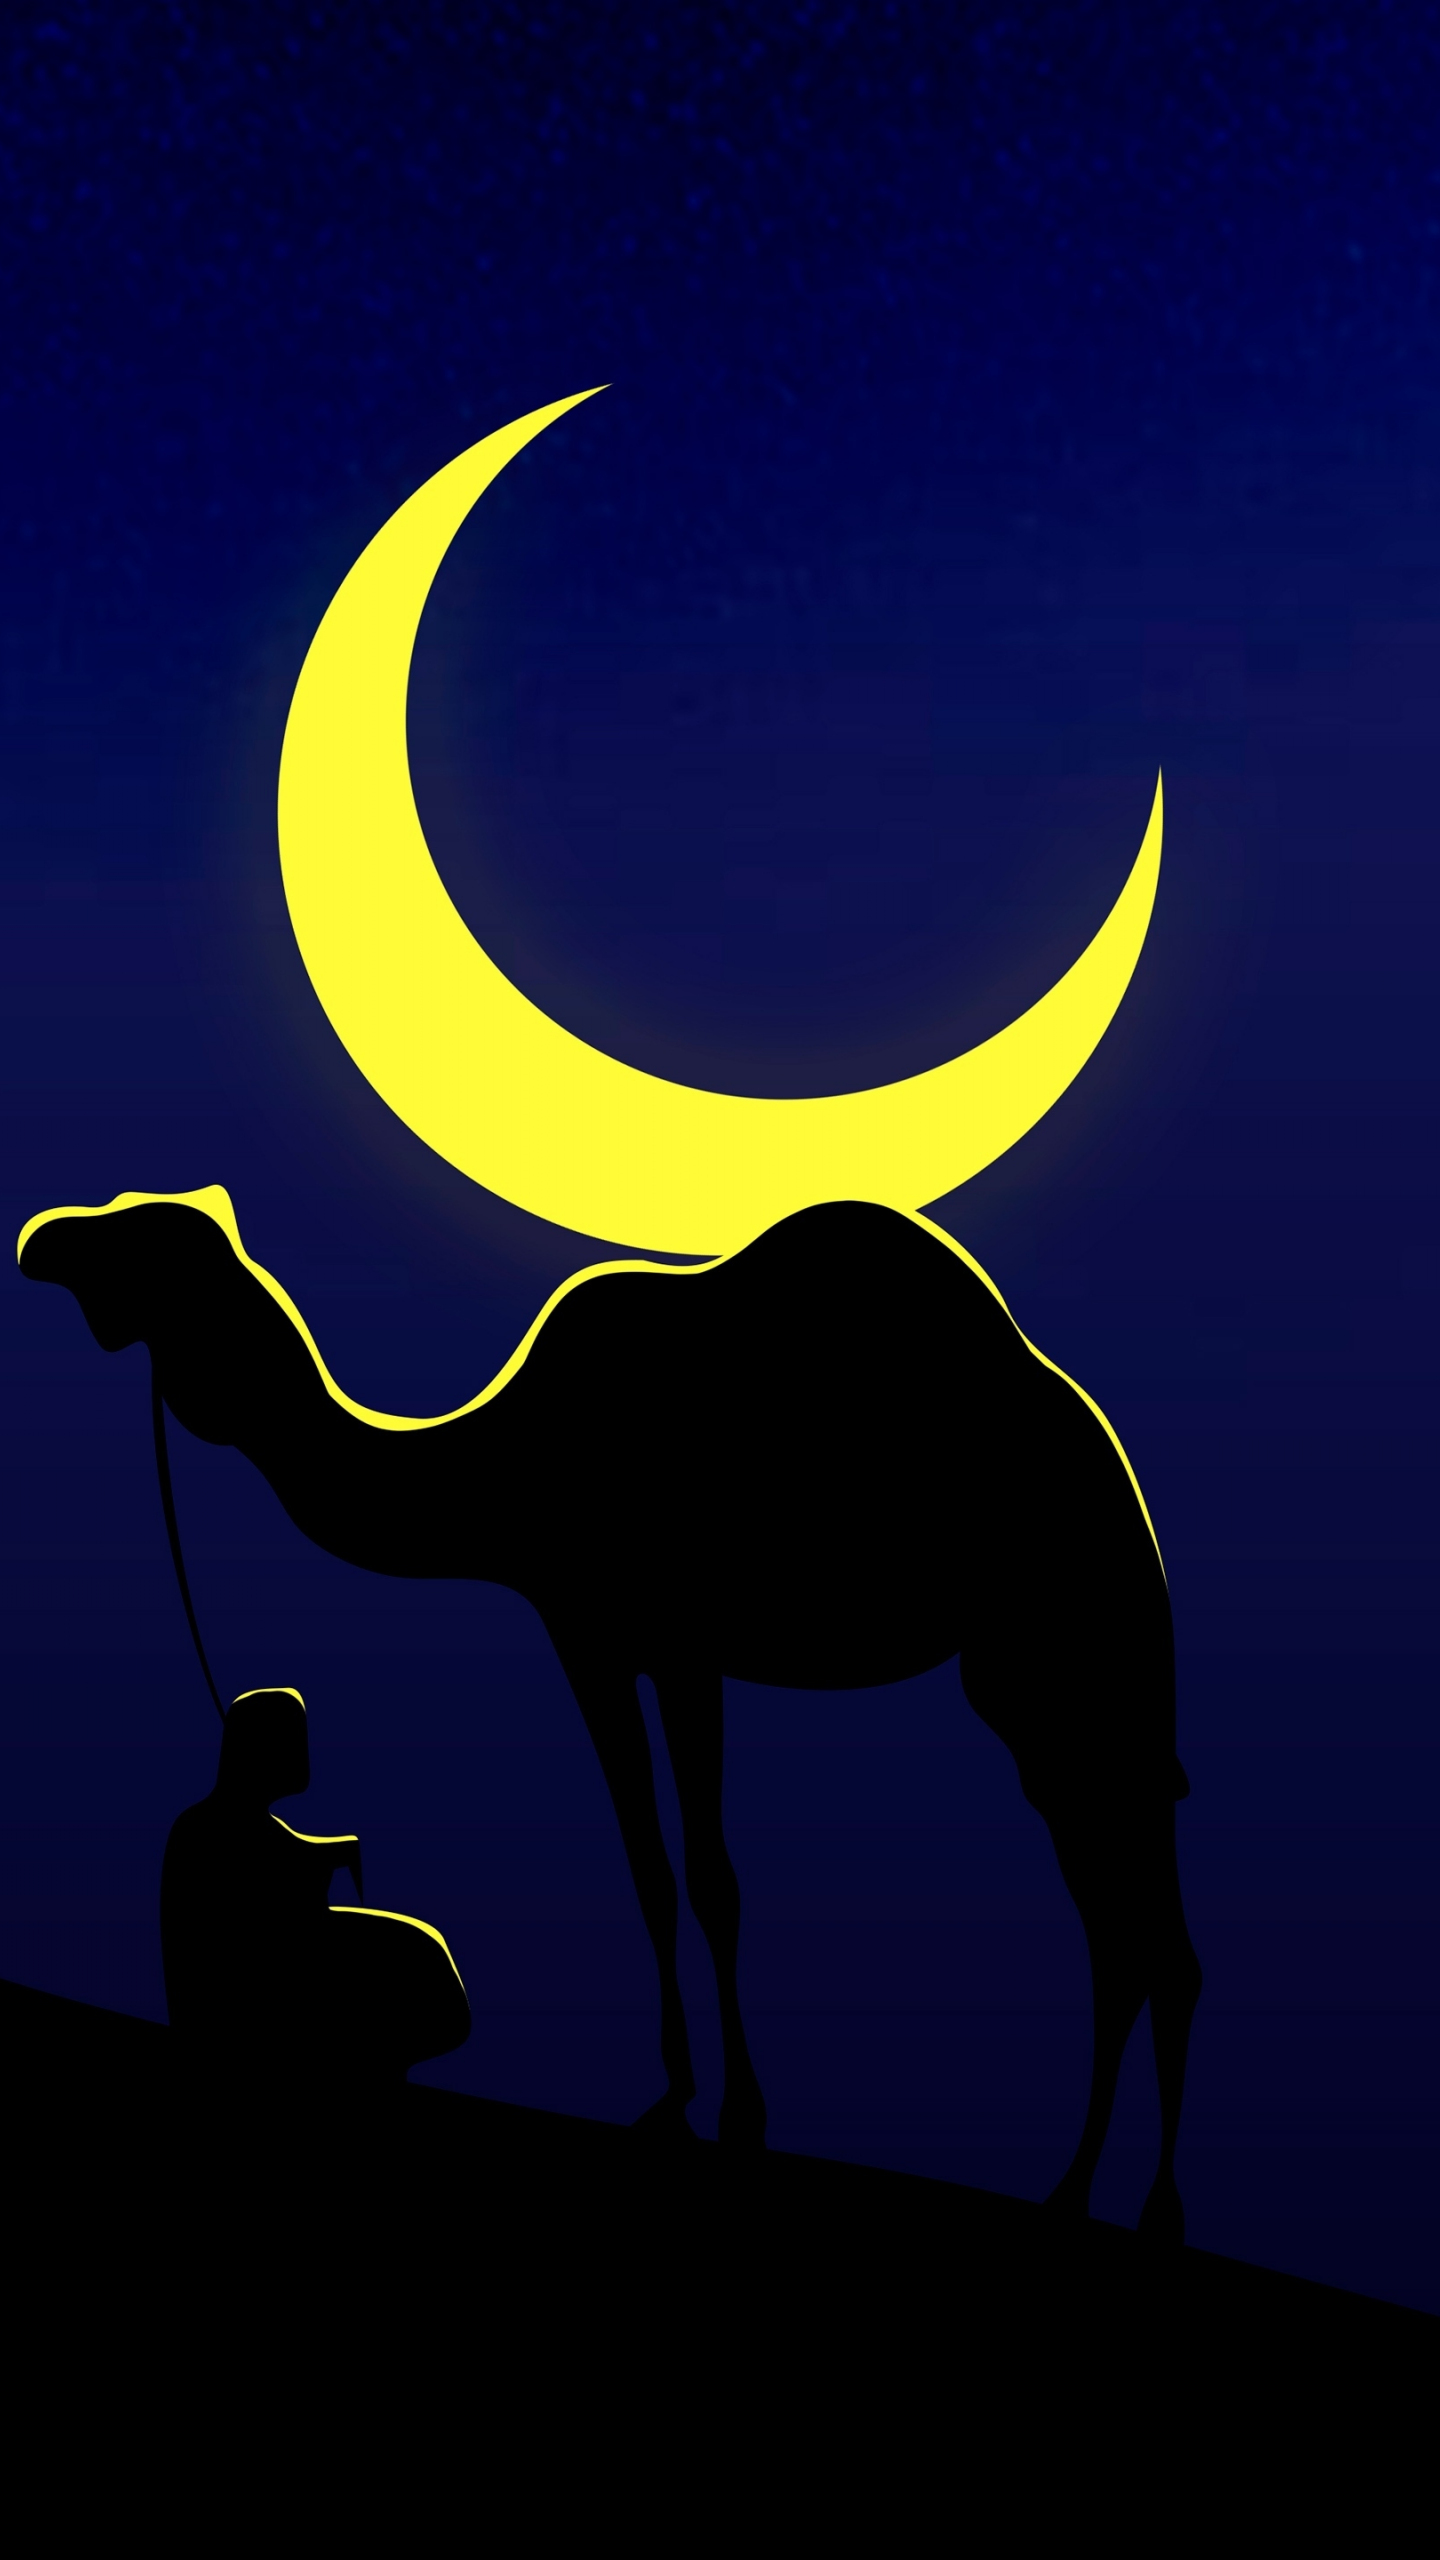 Camel and his master, moon, minimal, 1440x2560 wallpaper